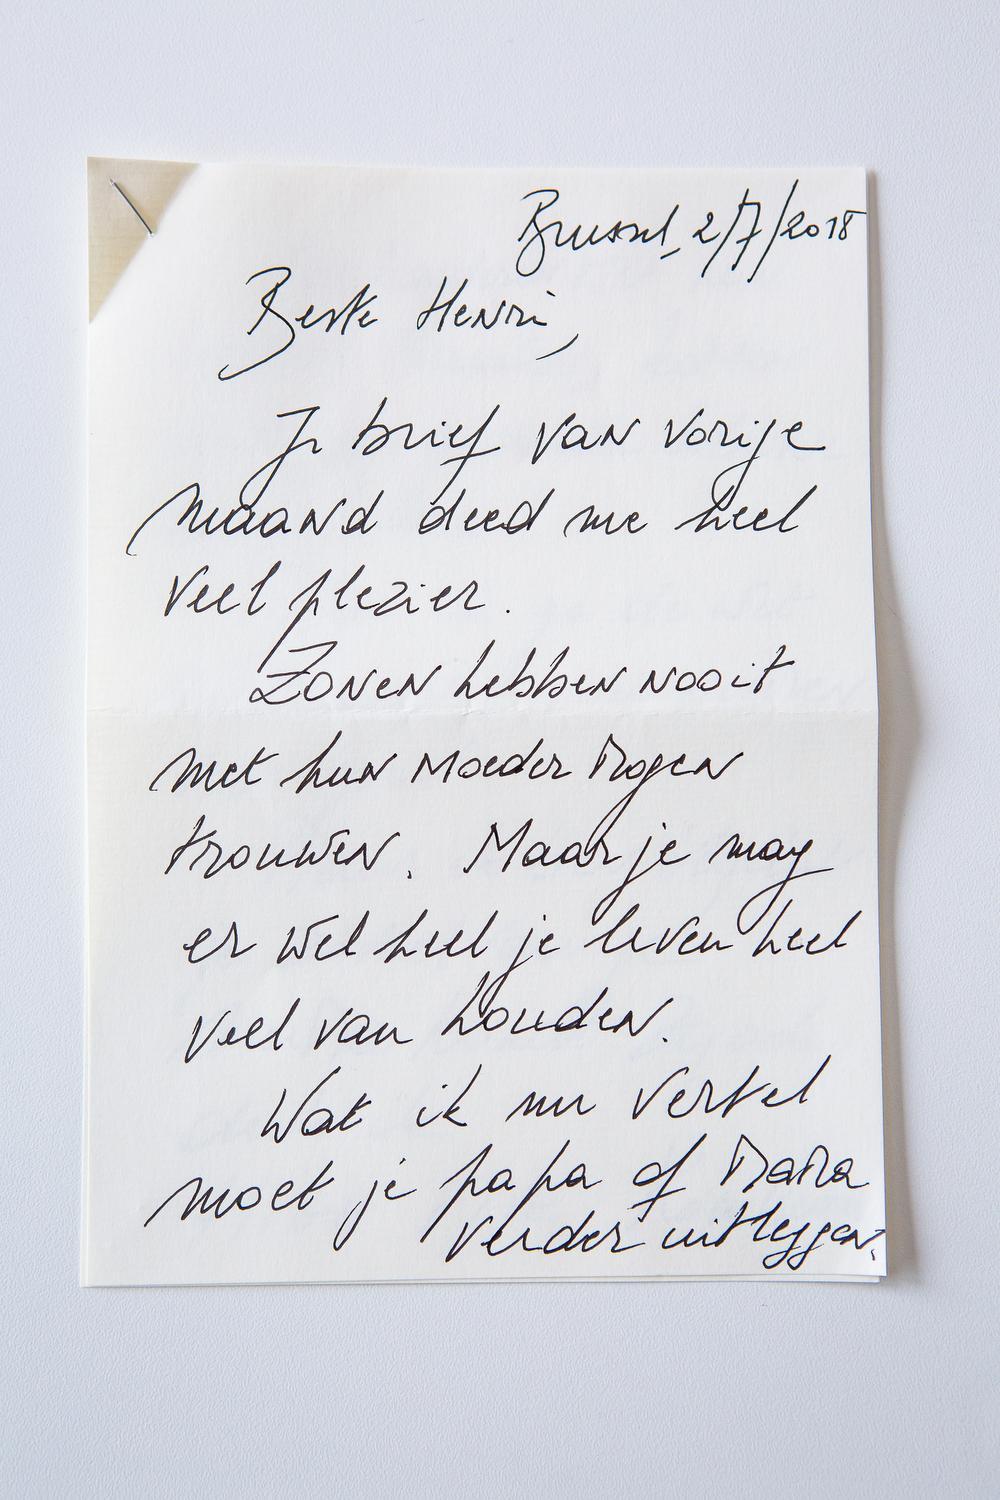 In het eerste deel van de brief bedankt minister Koen Geens, Henri Lenoir voor zijn brief: 